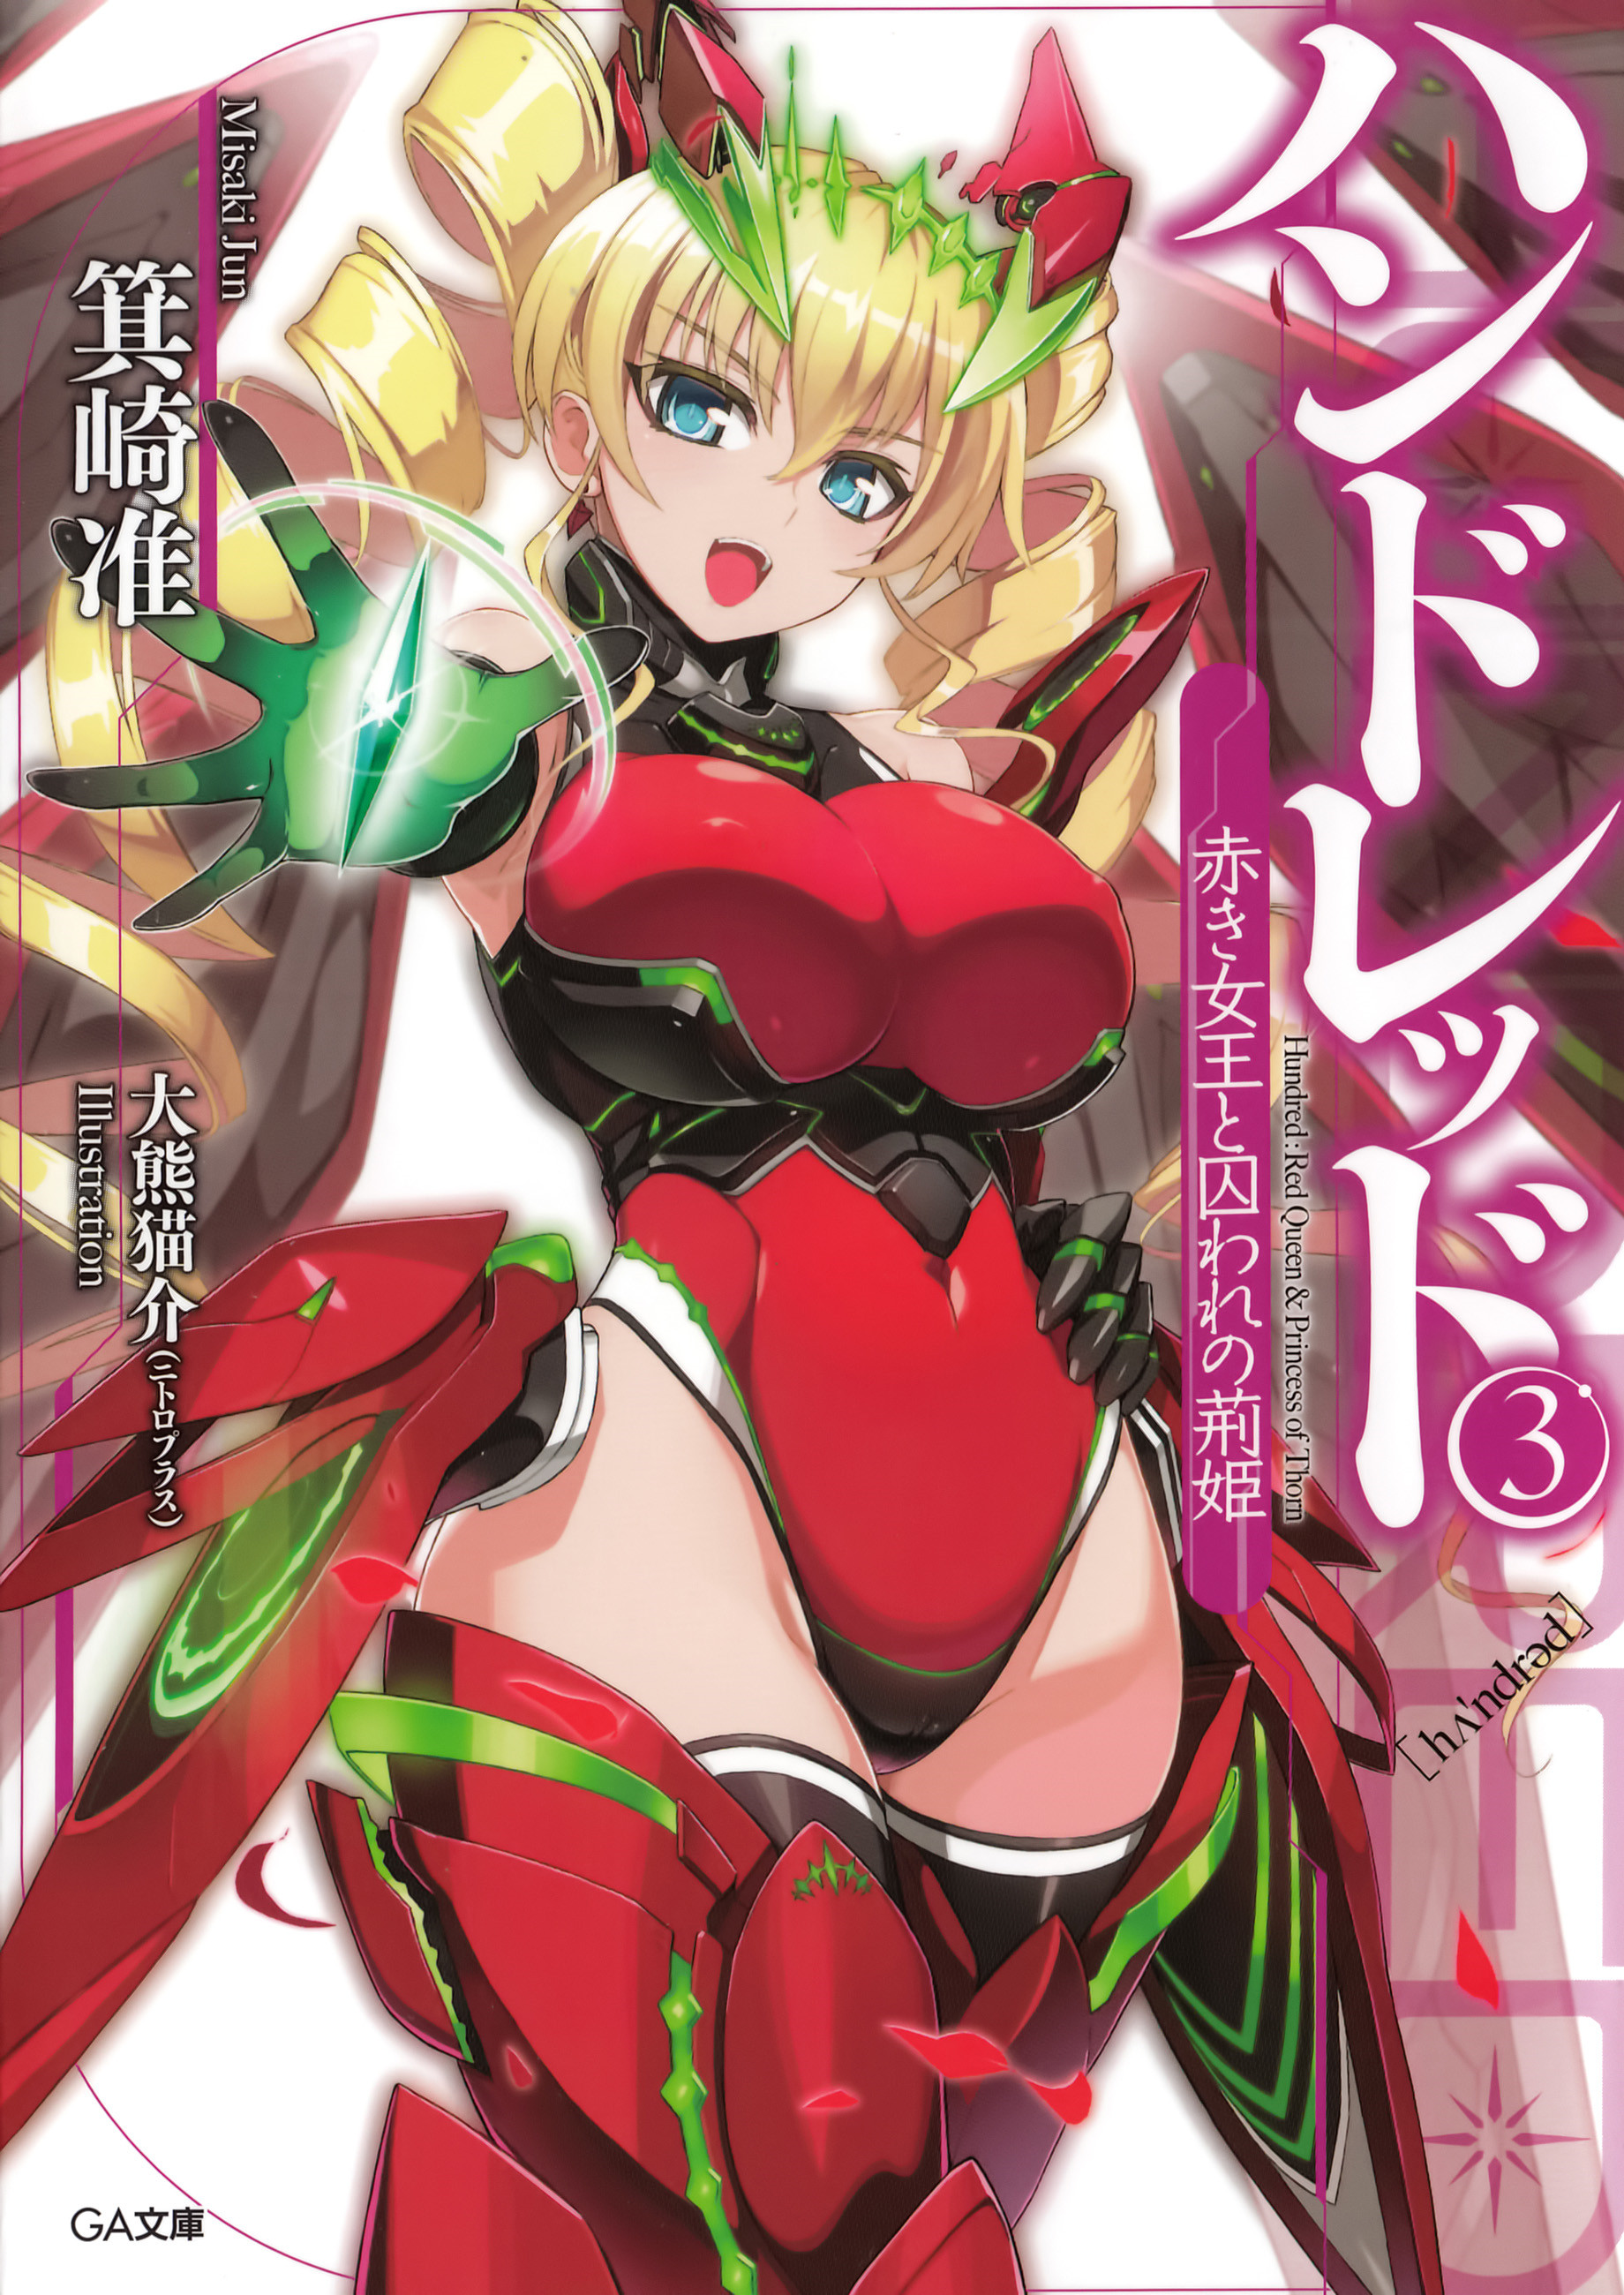 Light Novel Volume 03 Handoreddo Wikia Fandom Images, Photos, Reviews